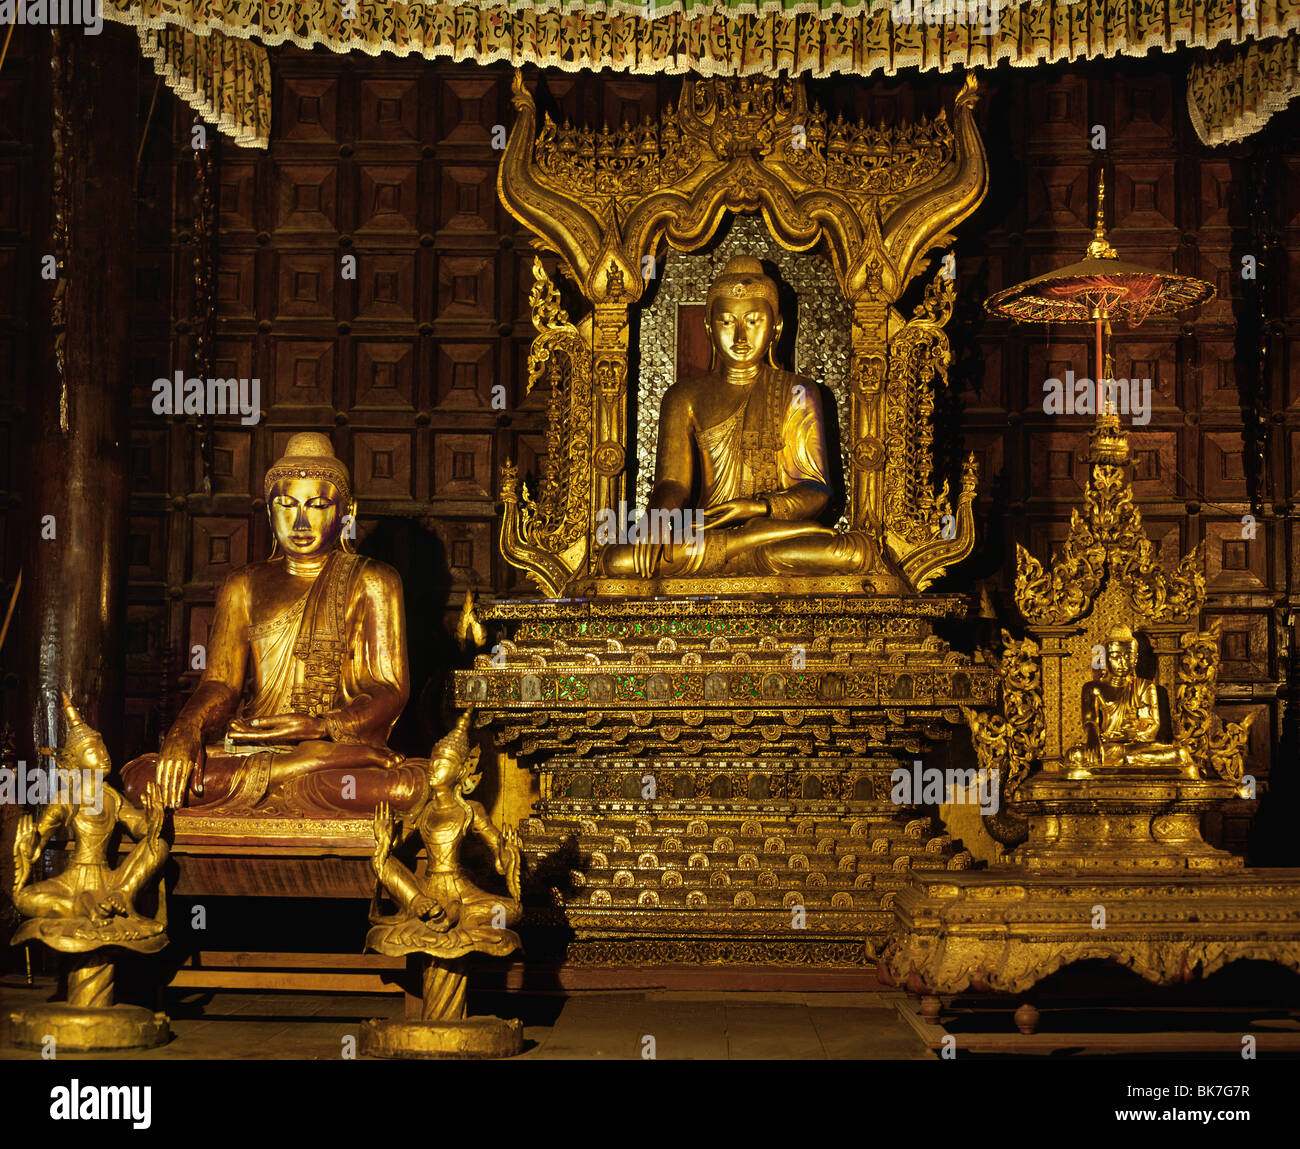 Images de Bouddha, de la fin de période Mandalay dans le monastère Shwe In Bin, Mandalay, Myanmar (Birmanie), l'Asie Banque D'Images